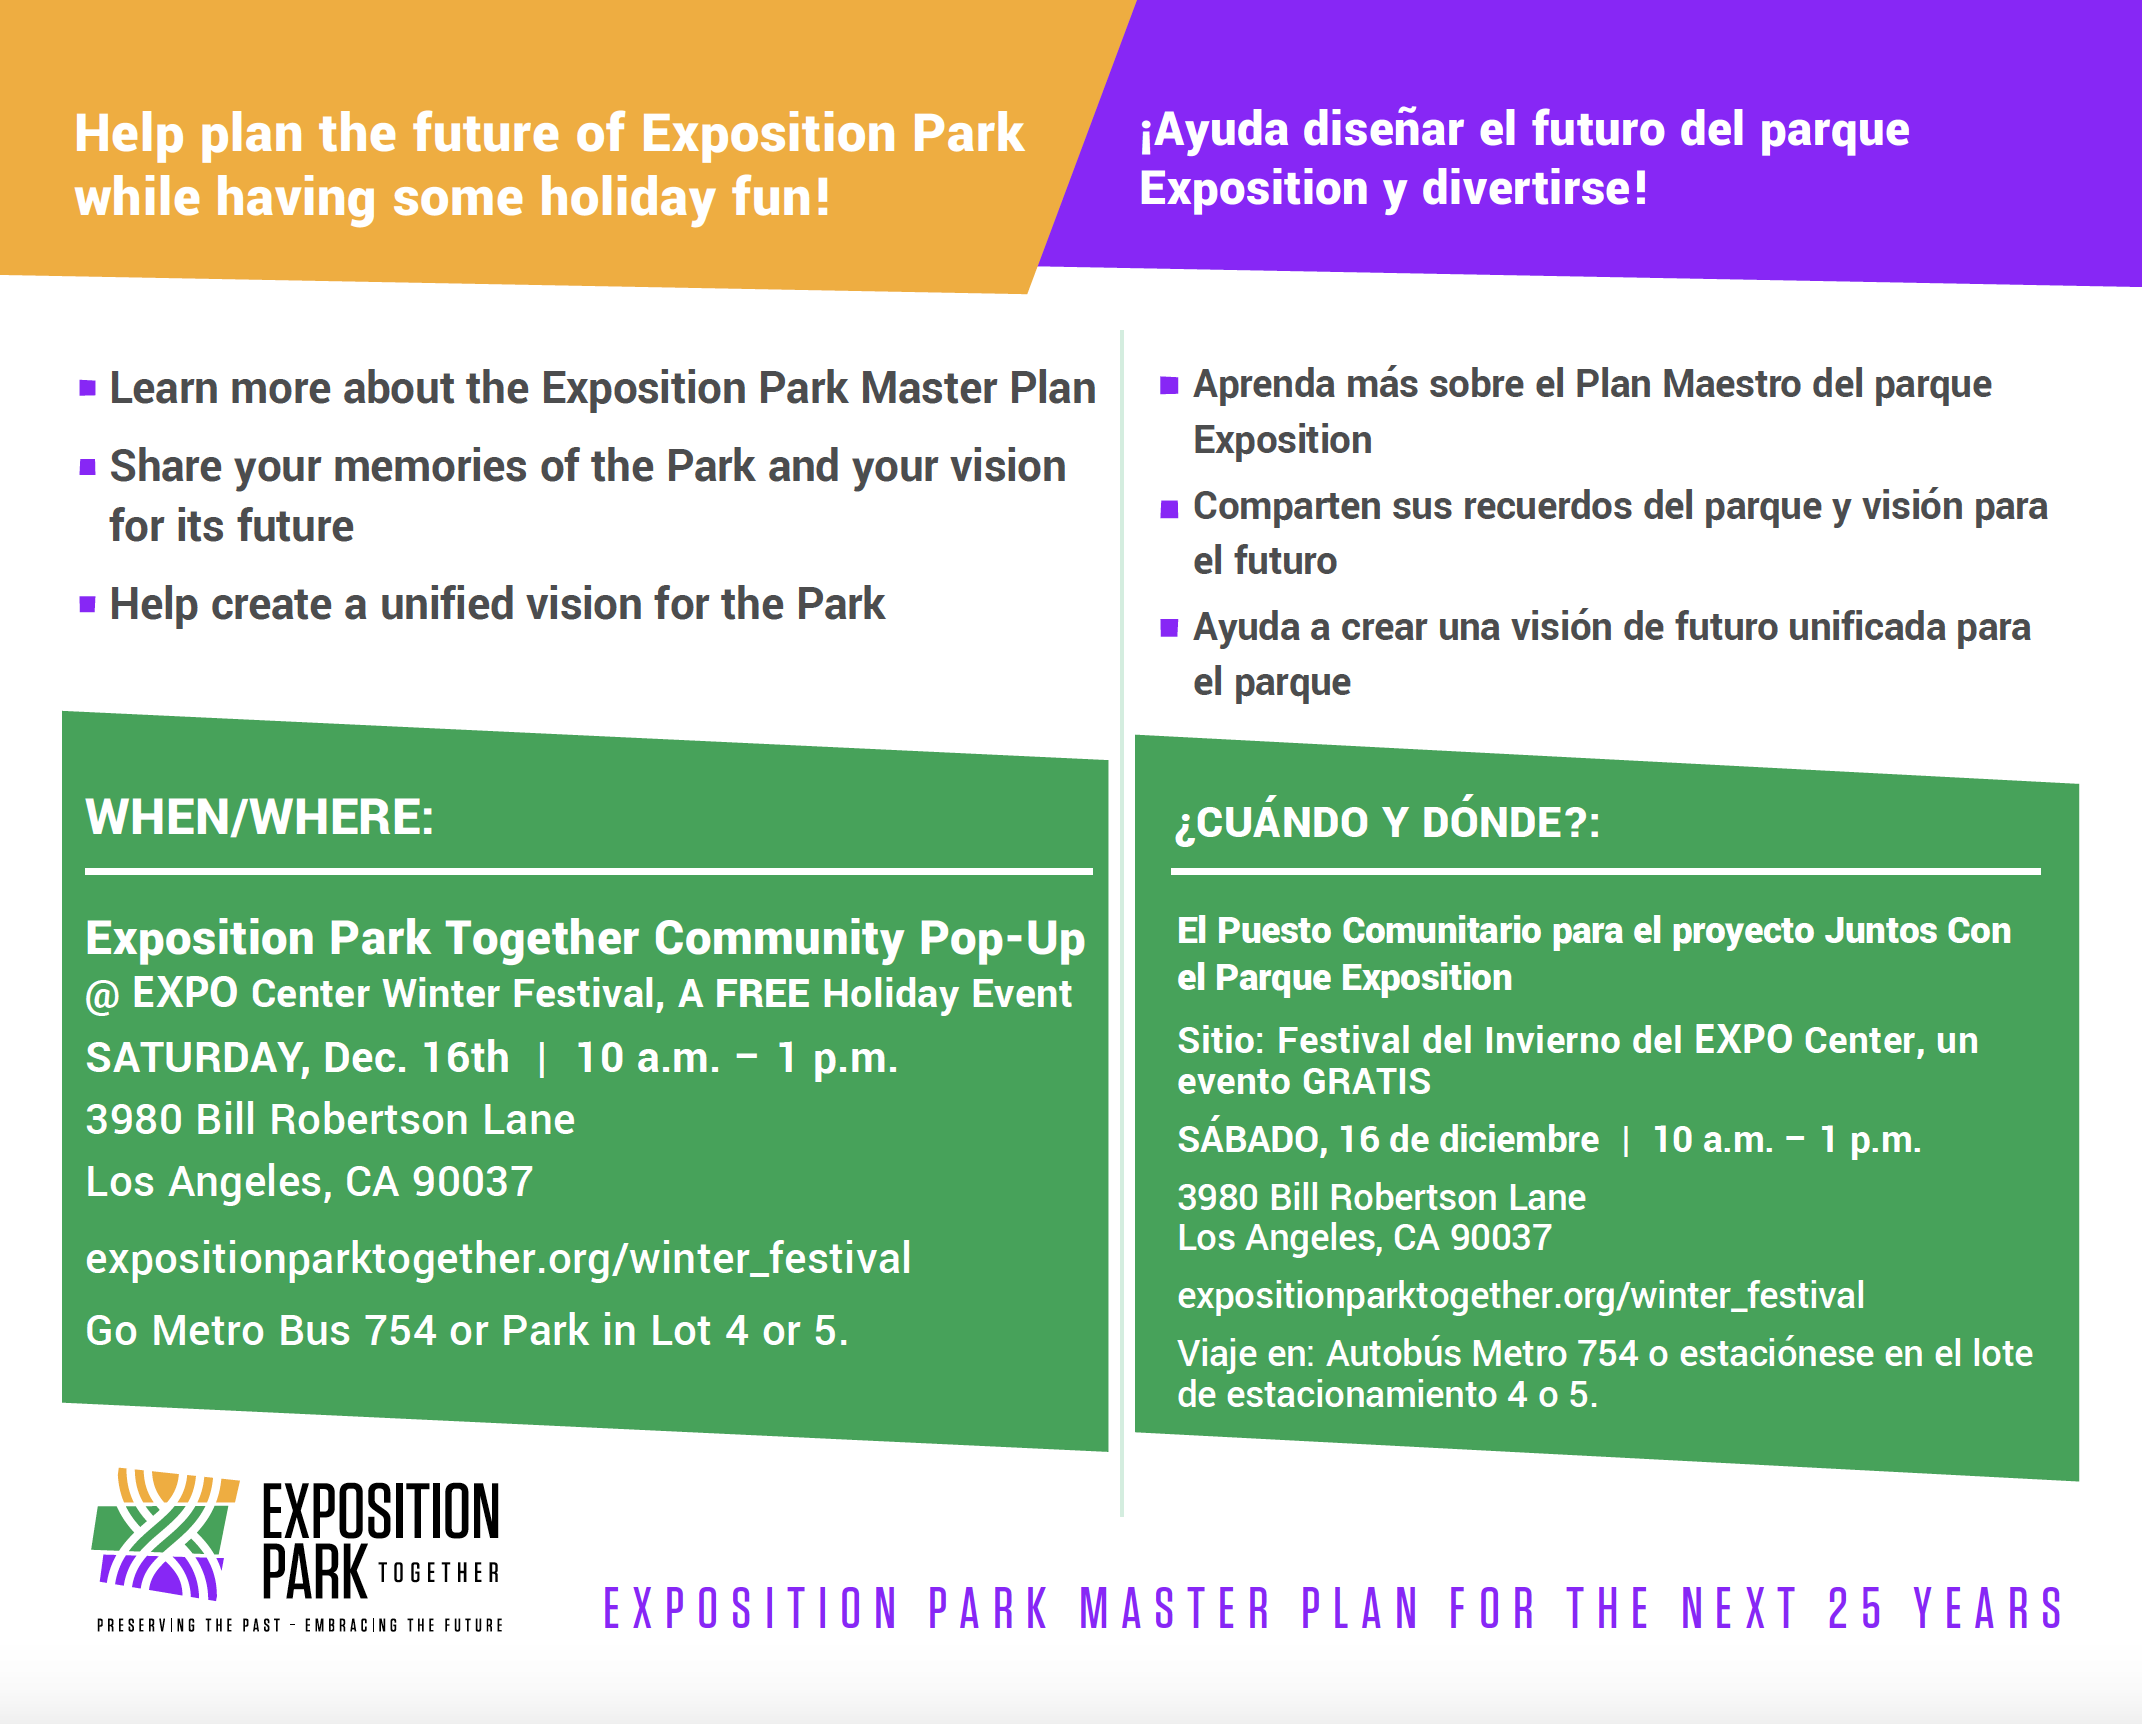 Exposition_Park_Together_Community_Pop-Up_Flyer.png